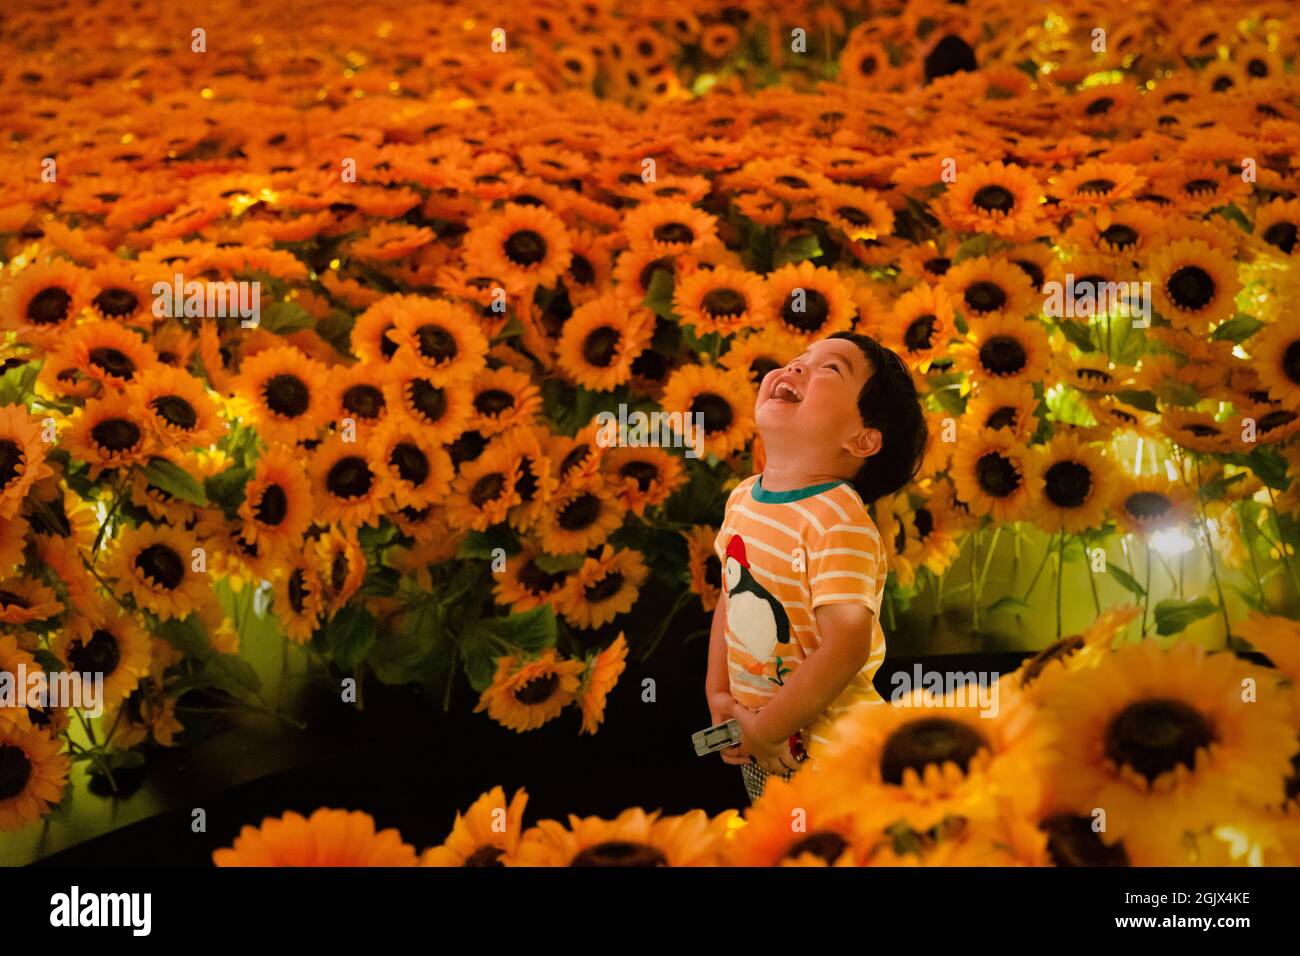 Londres, Royaume-Uni. 12 septembre 2021. Un enfant enchanté par les tournesols à l'expérience multimédia immersive Van Gogh Alive dans les jardins de Kensington Credit: Andy Sillett/Alay Live News Banque D'Images